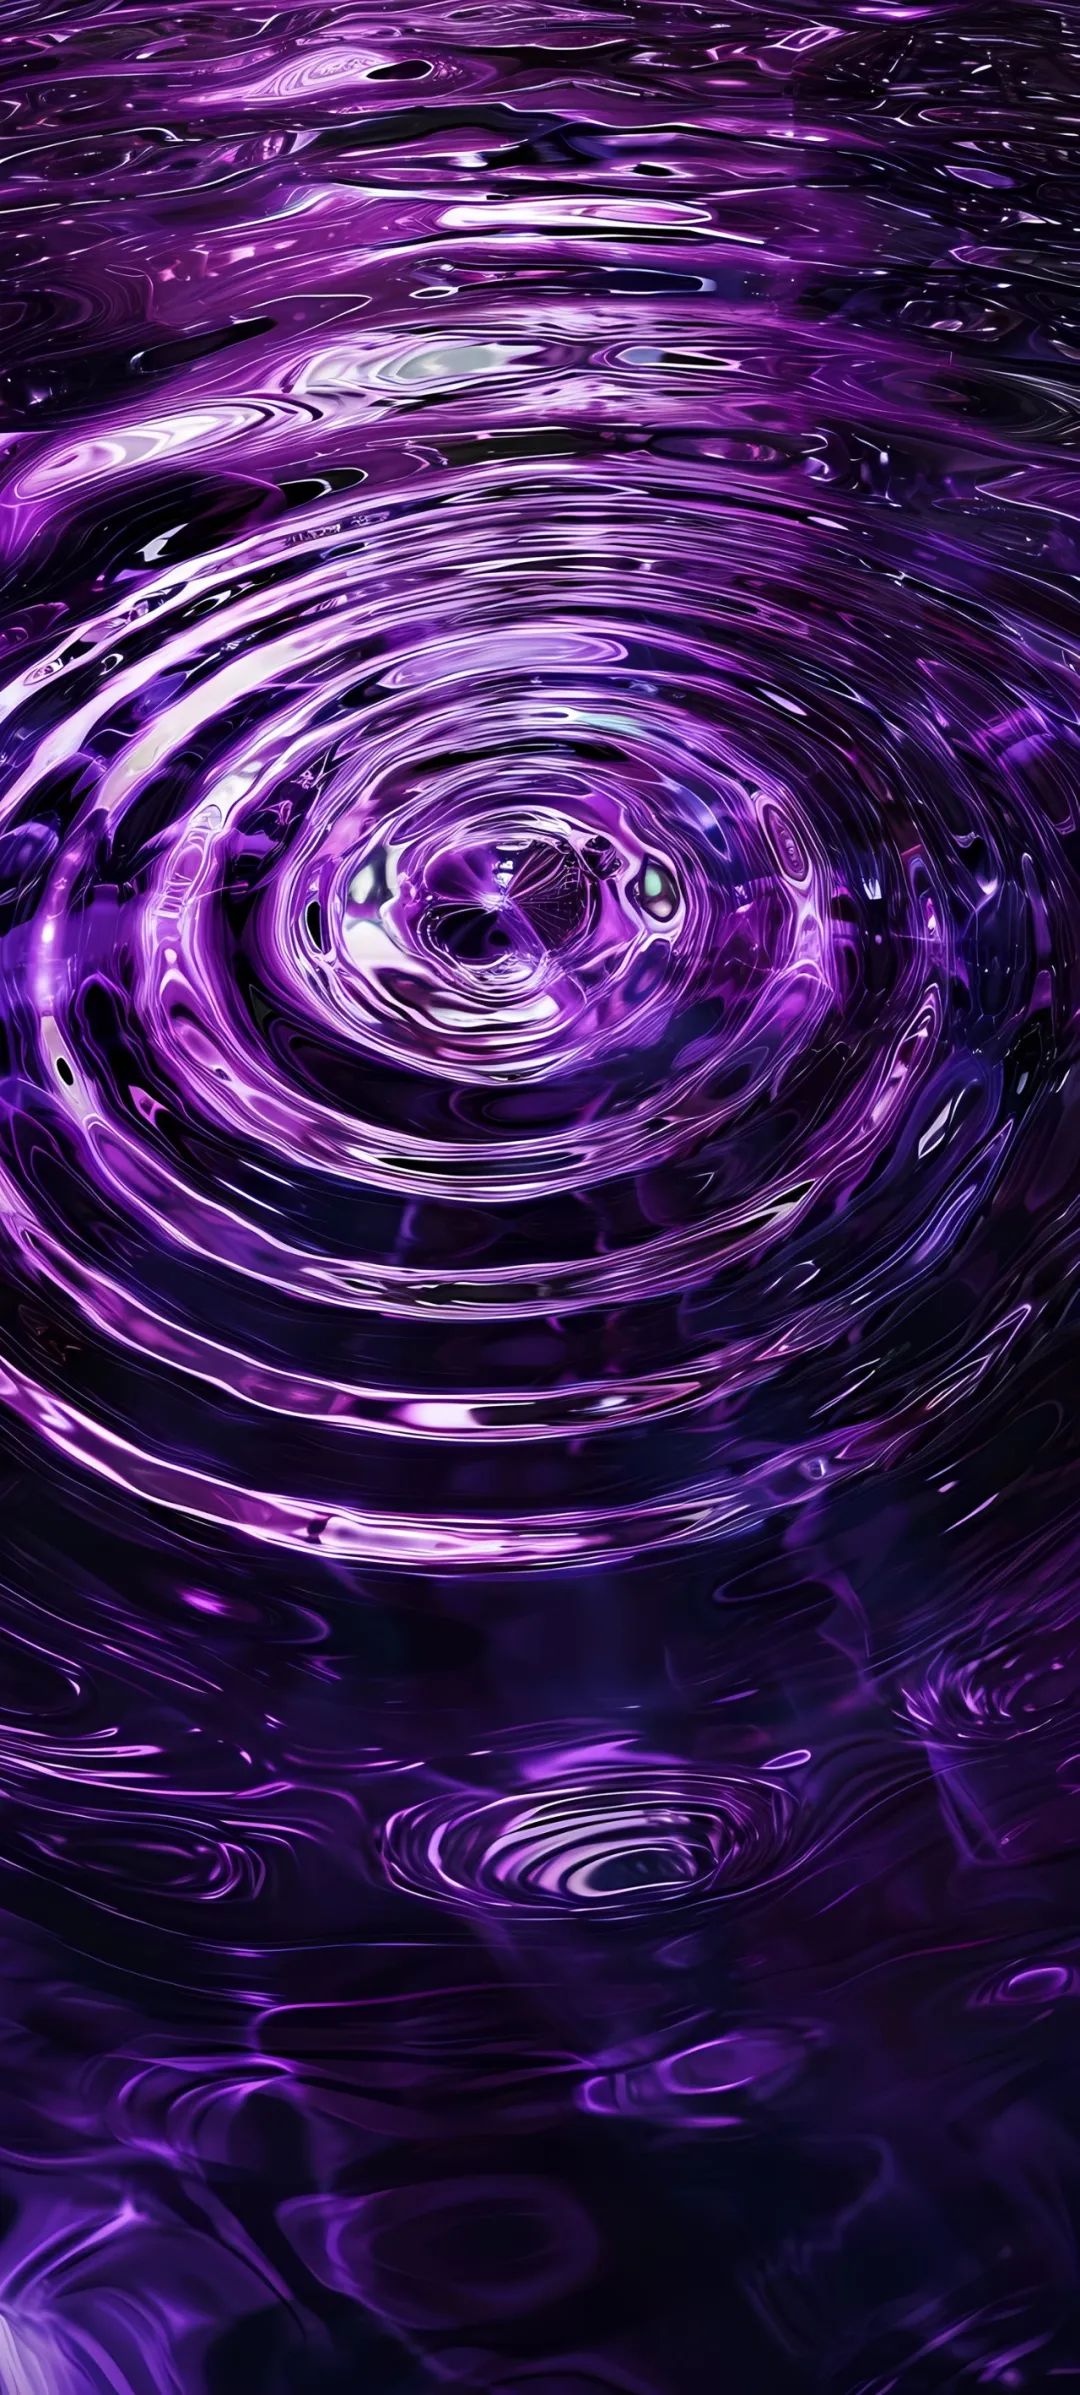 紫色壁纸 水印图片